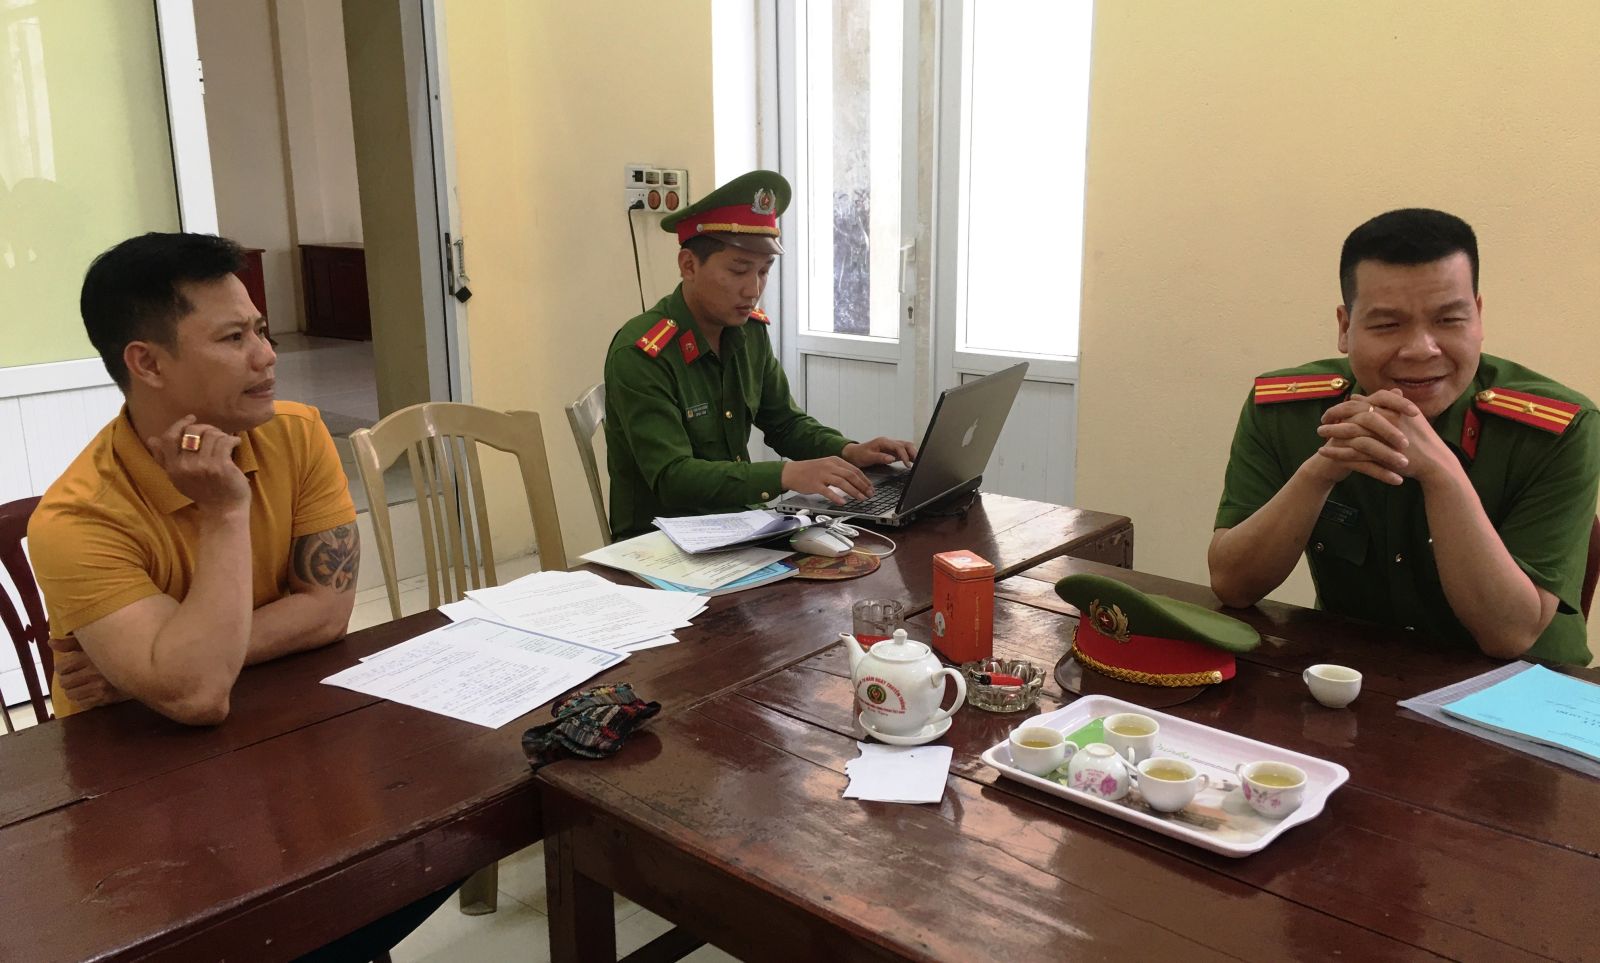 33/52 cơ sở kinh doanh cầm đồ trên địa bàn Thị xã Nghi Sơn có dấu hiệu vi phạm - Ảnh 2.